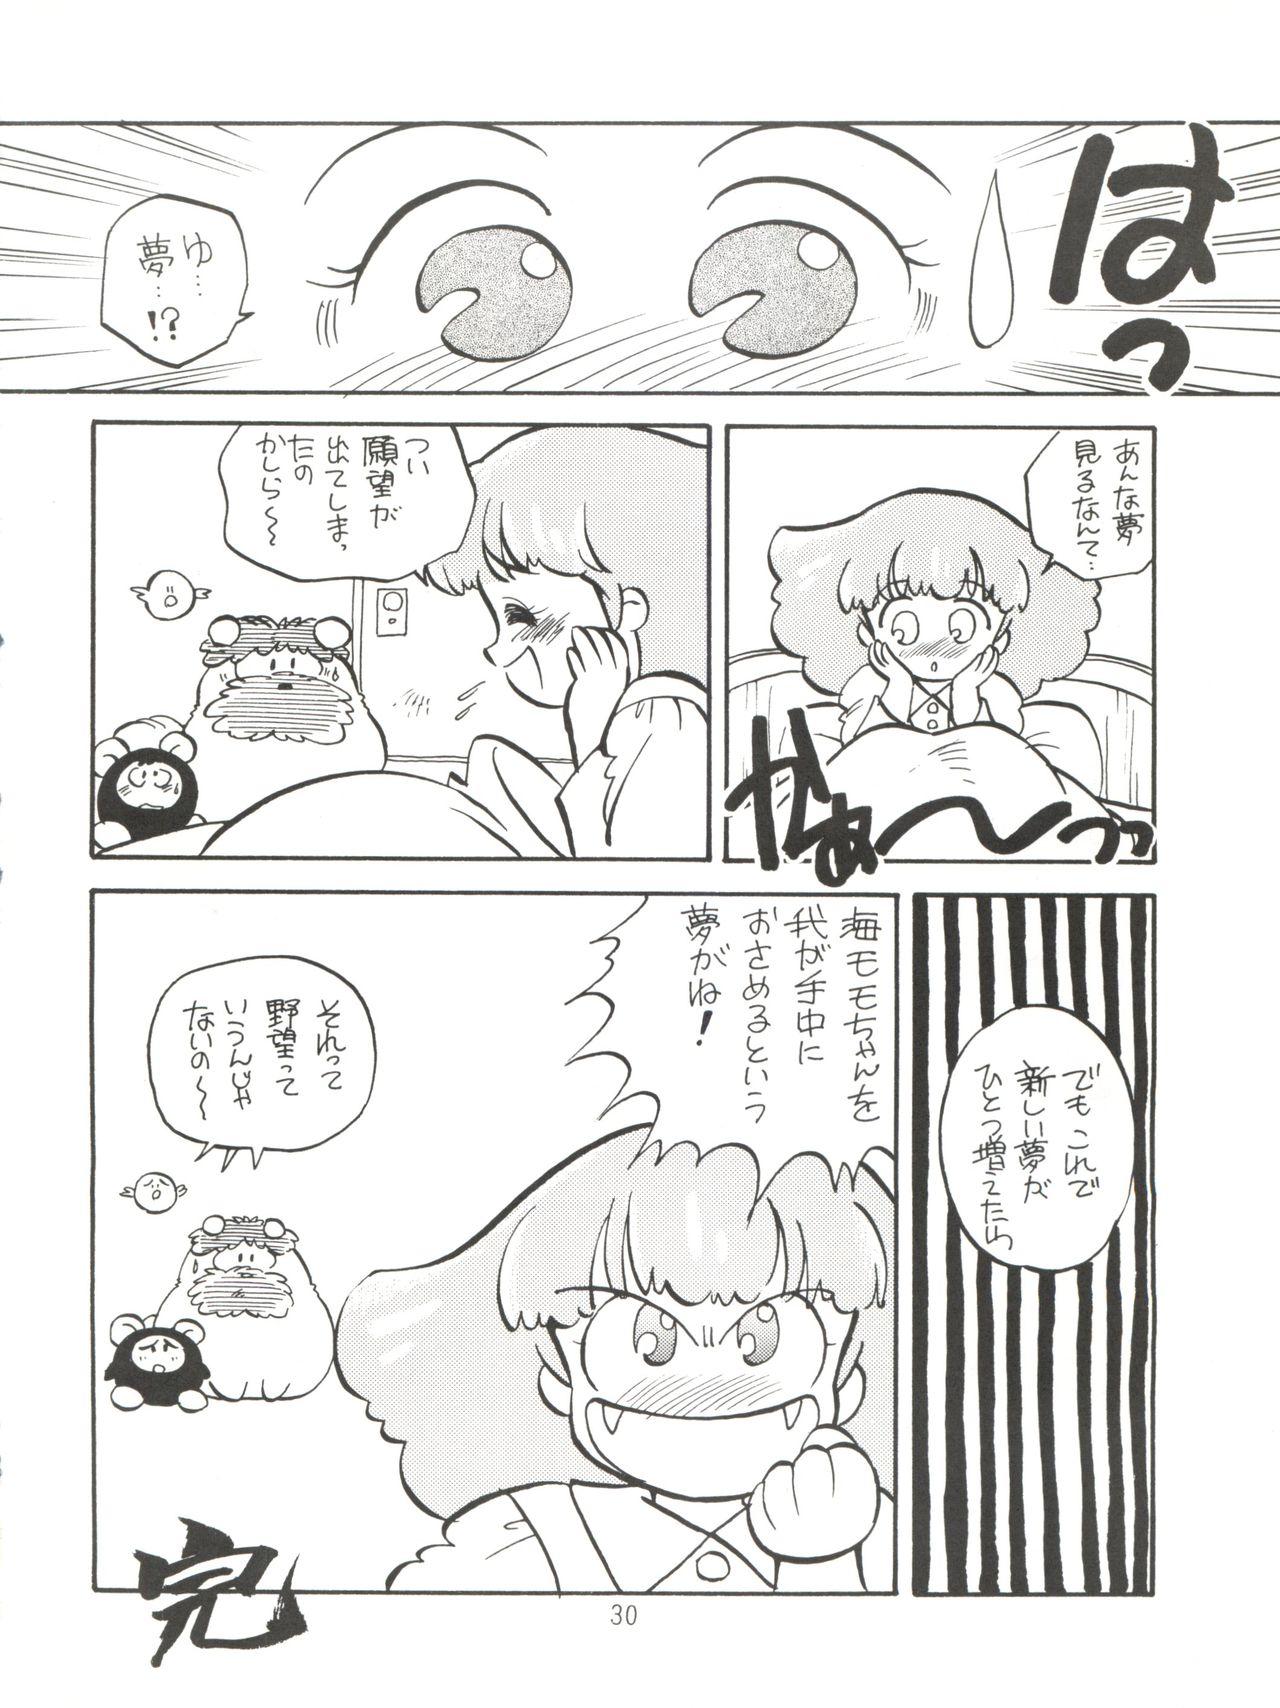 [紫電会 (お梅) MOMO POWER (Mahou no Princess Minky Momo) 29